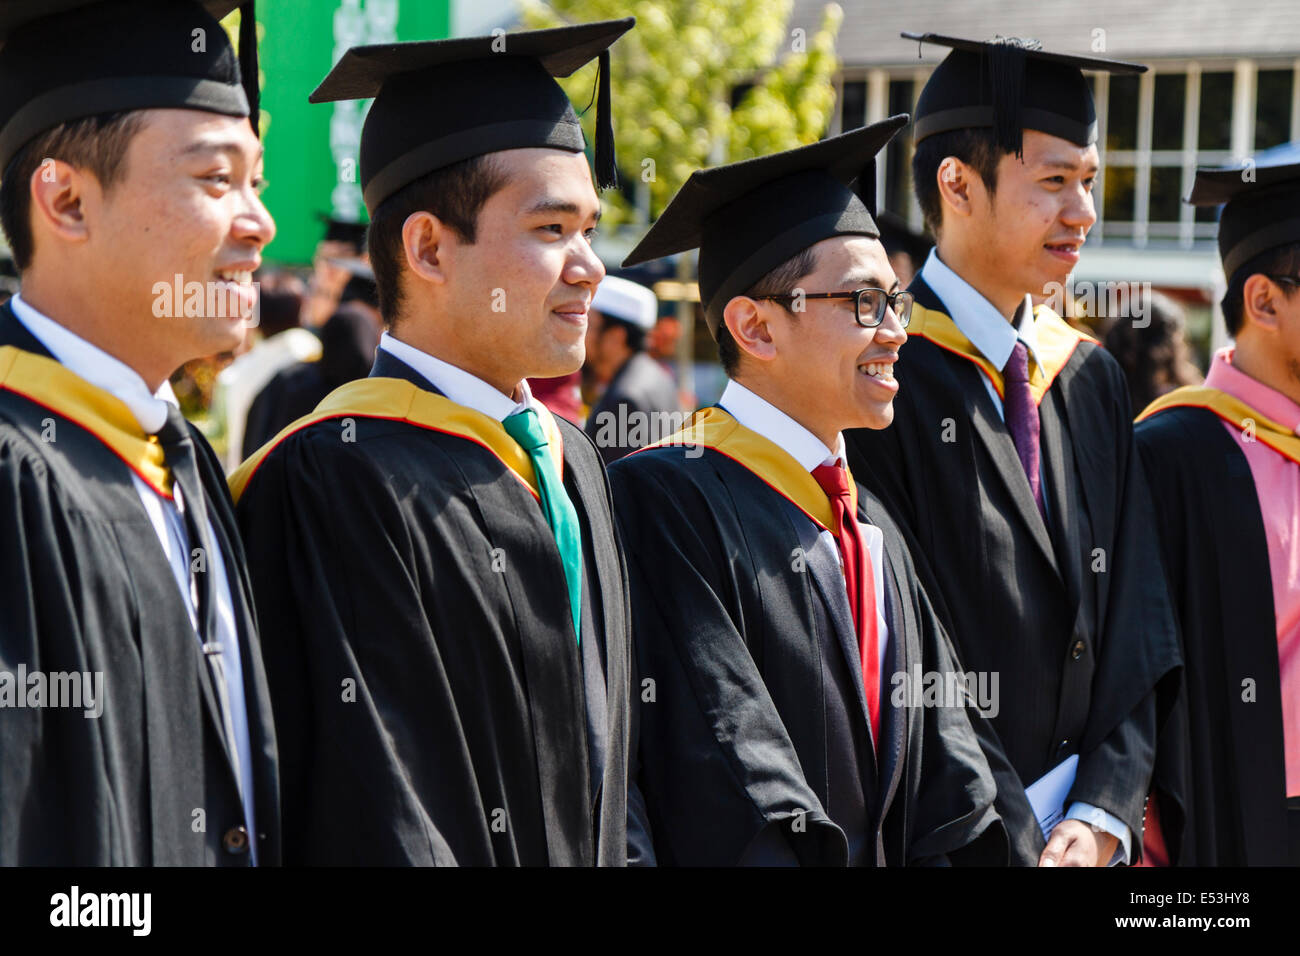 International students pose for photographs at University graduation day, Keele University, UK Stock Photo